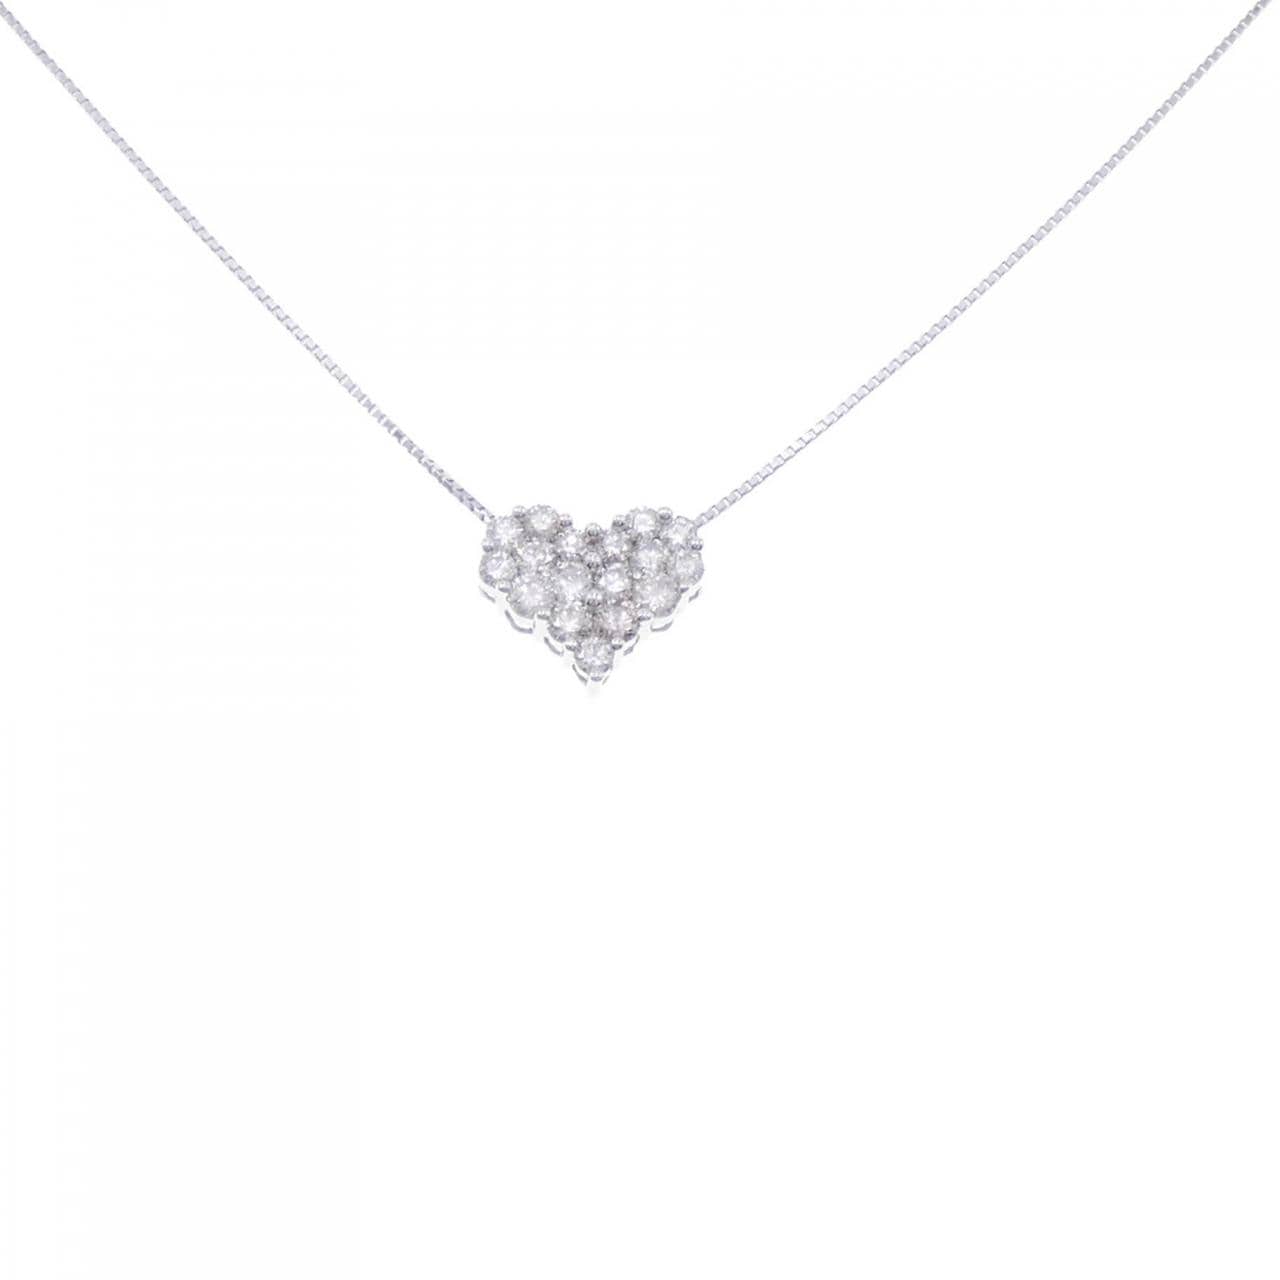 K18WG Pave Heart Diamond Necklace 1.00CT